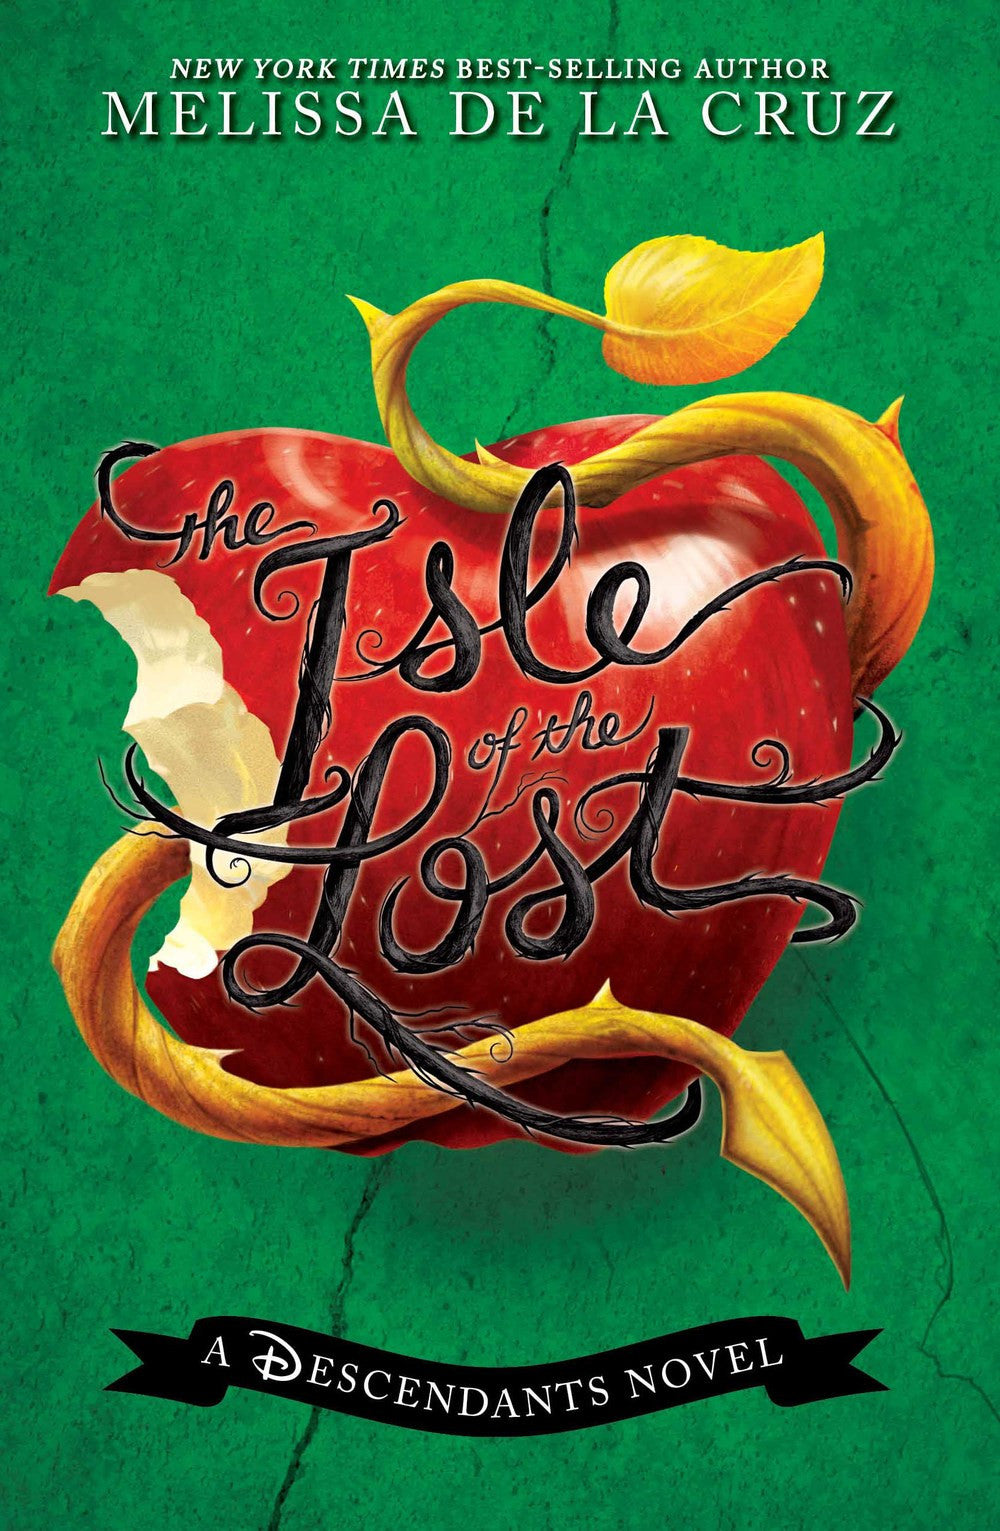 The Descendants #1: The Isle of the Lost by Melissa de la Cruz